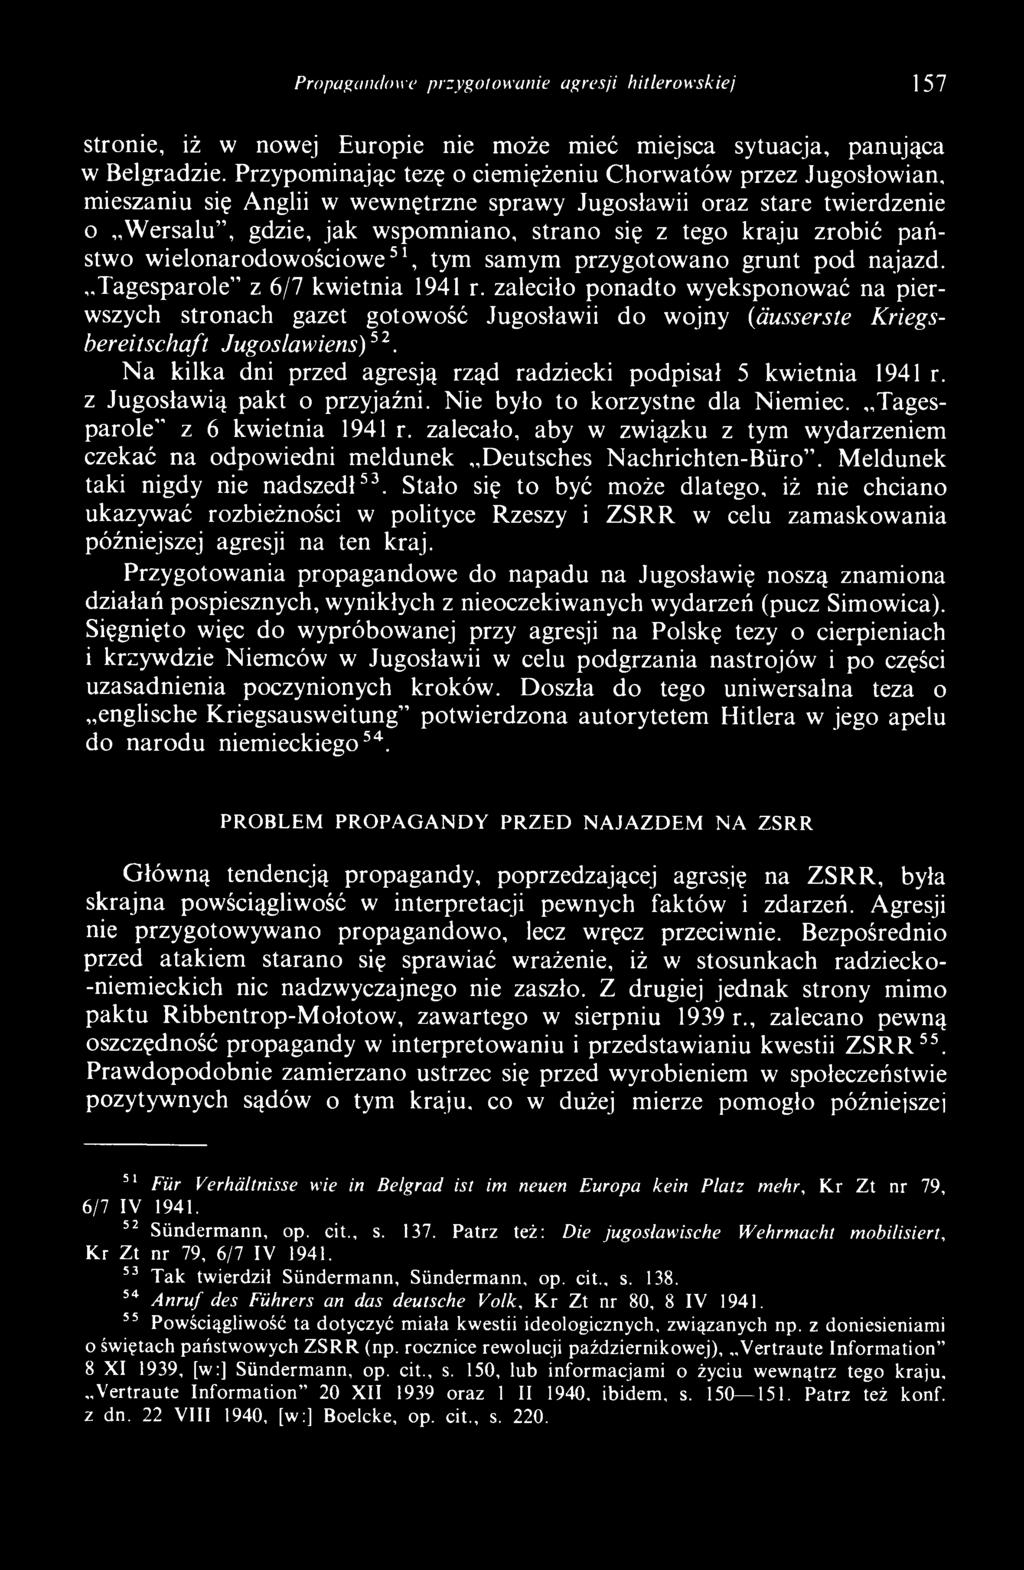 N a kilka dni przed agresją rząd radziecki podpisał 5 kwietnia 1941 r. z Jugosławią pakt o przyjaźni. Nie było to korzystne dla Niemiec. Tagesparole z 6 kwietnia 1941 r.